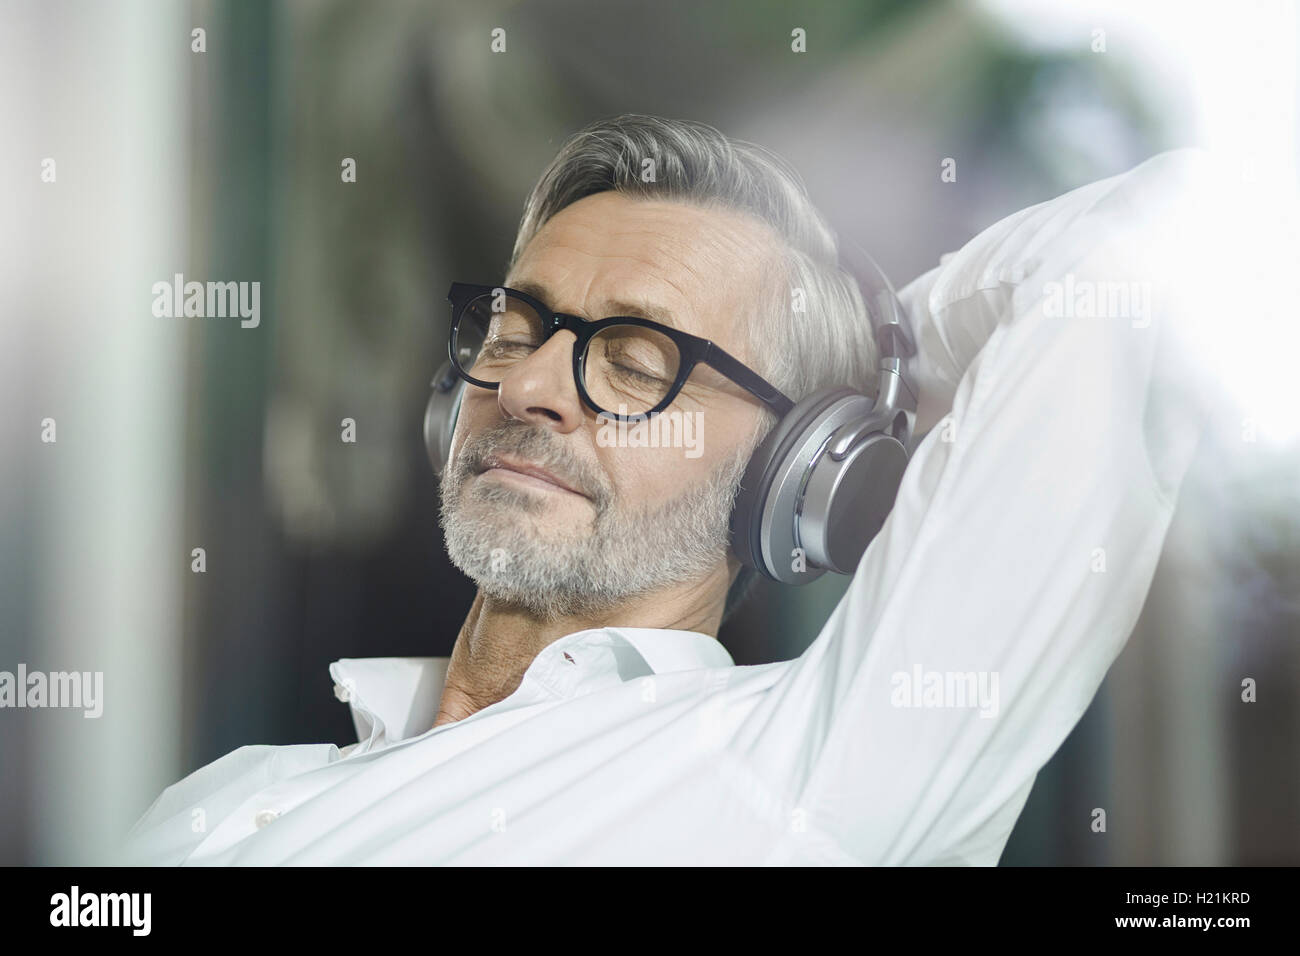 Portrait d'un homme avec les yeux fermés écoutant de la musique avec des écouteurs Banque D'Images